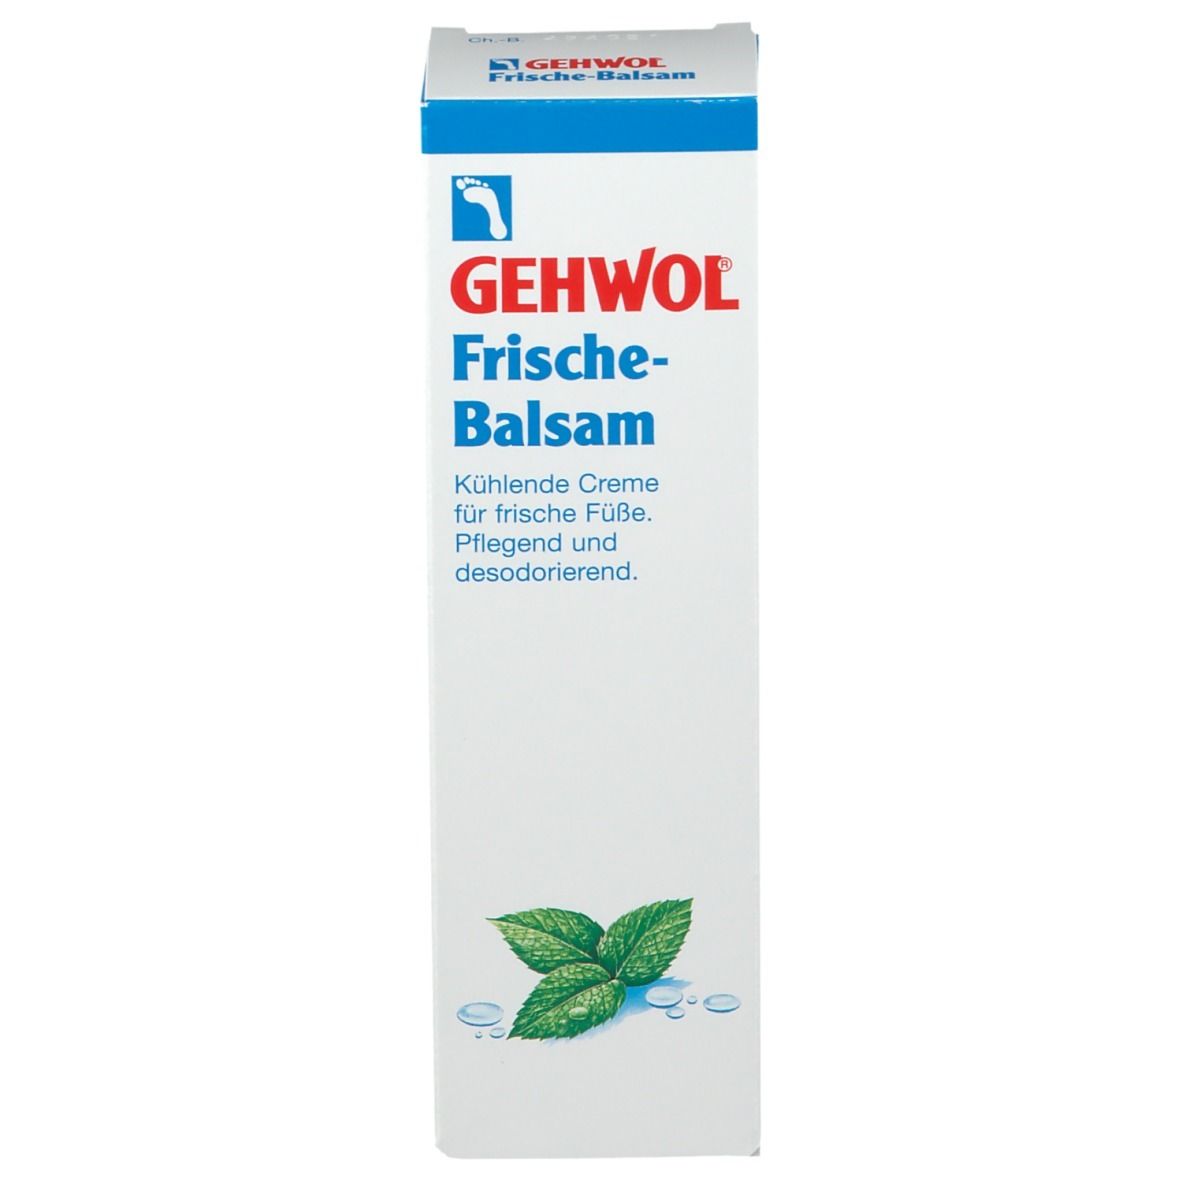 GEHWOL® Frische-Balsam